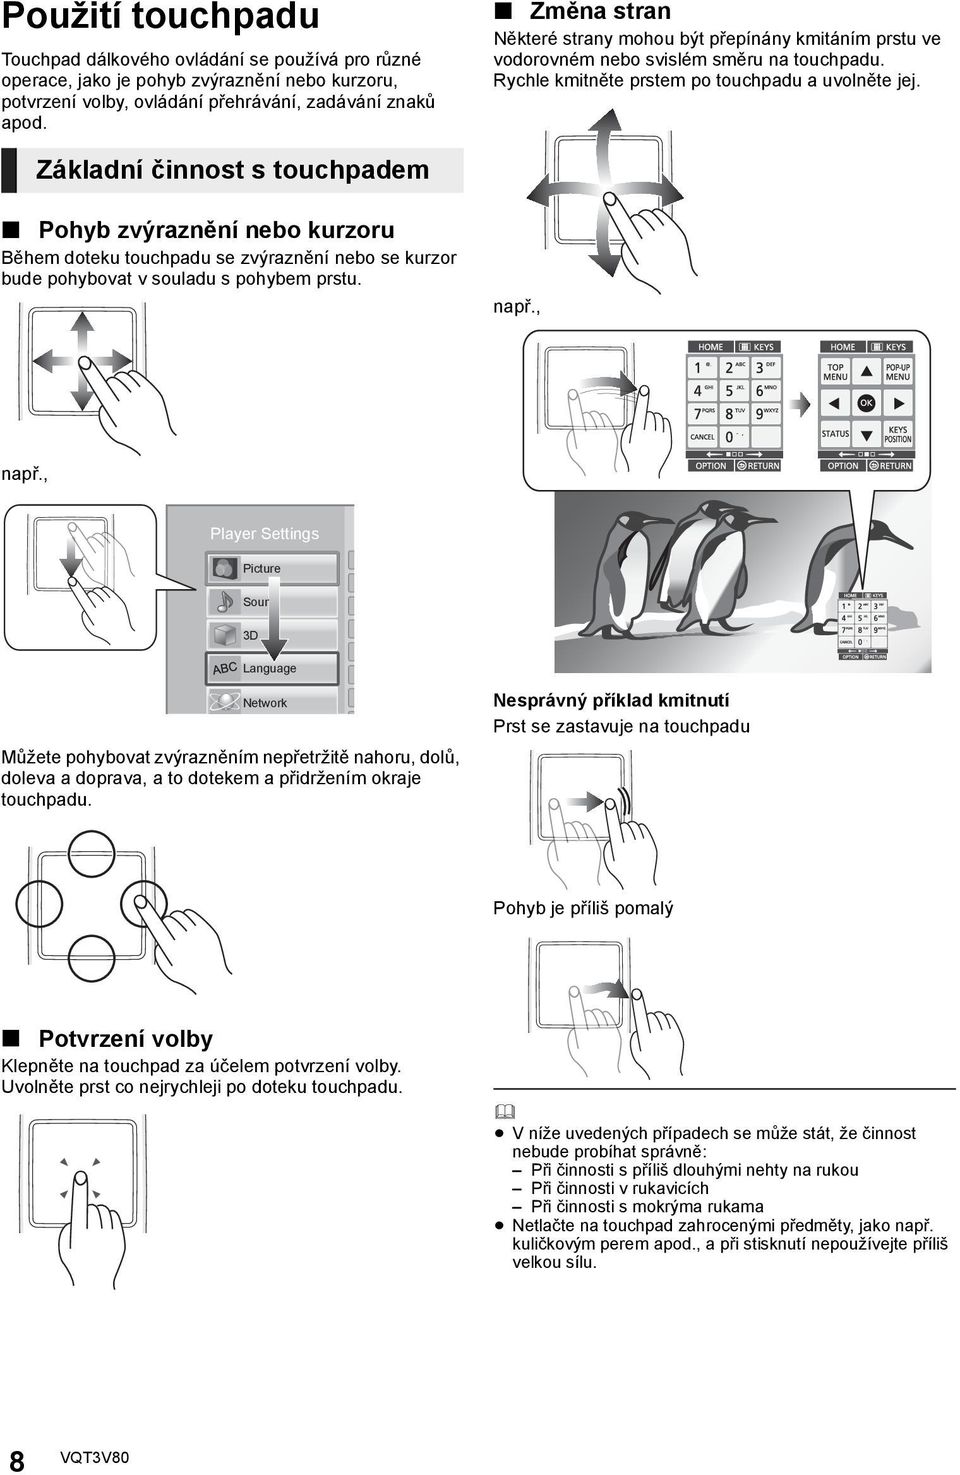 Základní činnost s touchpadem Pohyb zvýraznění nebo kurzoru Během doteku touchpadu se zvýraznění nebo se kurzor bude pohybovat v souladu s pohybem prstu. např., např.